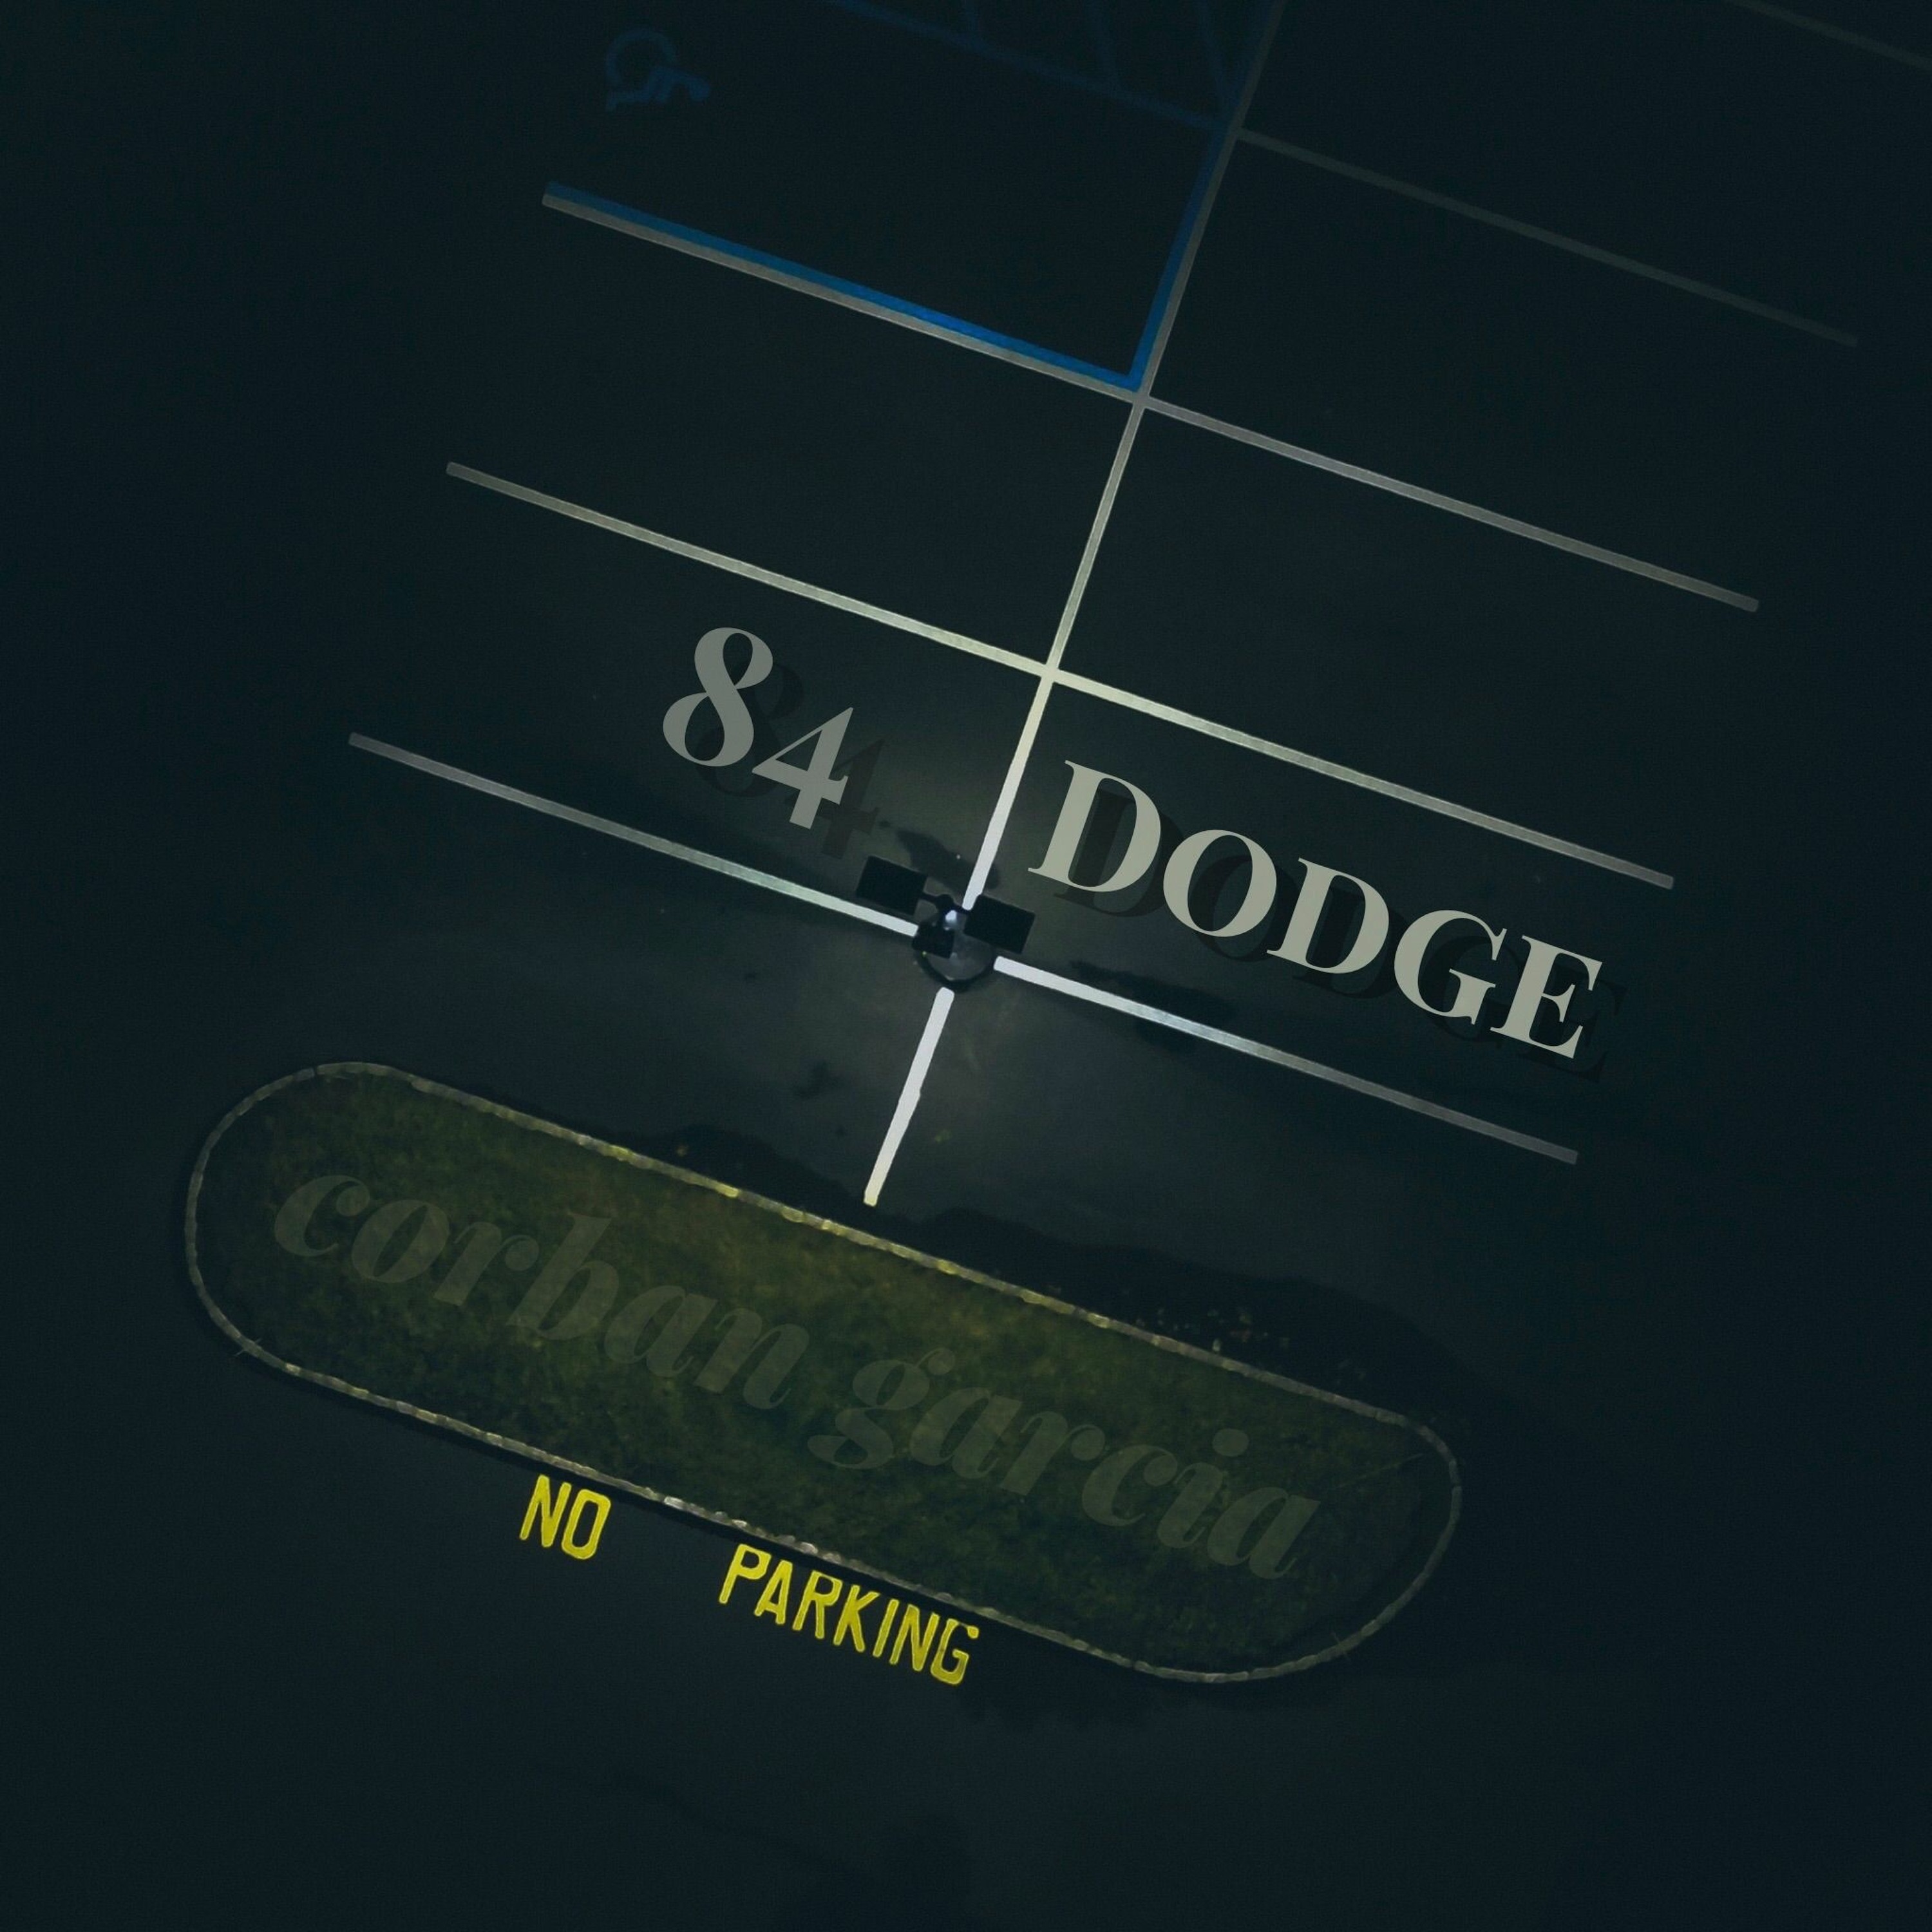 84 Dodge